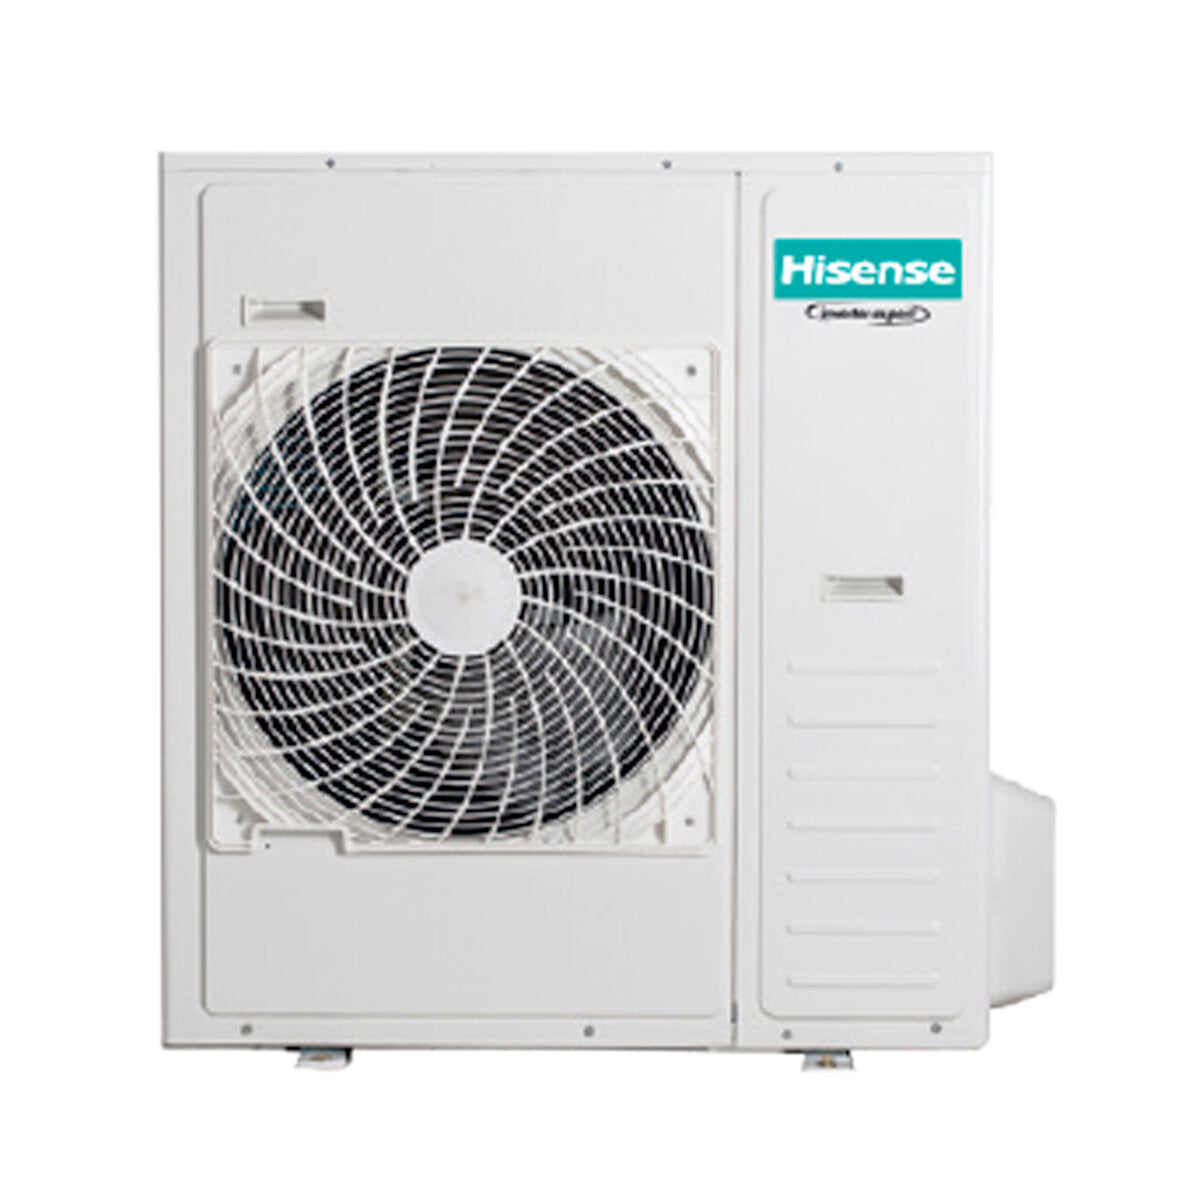 Hisense Hi-Comfort penta climatiseur split 9000+9000+9000+9000+18000 BTU wifi inverter unité extérieure 12,5 kW